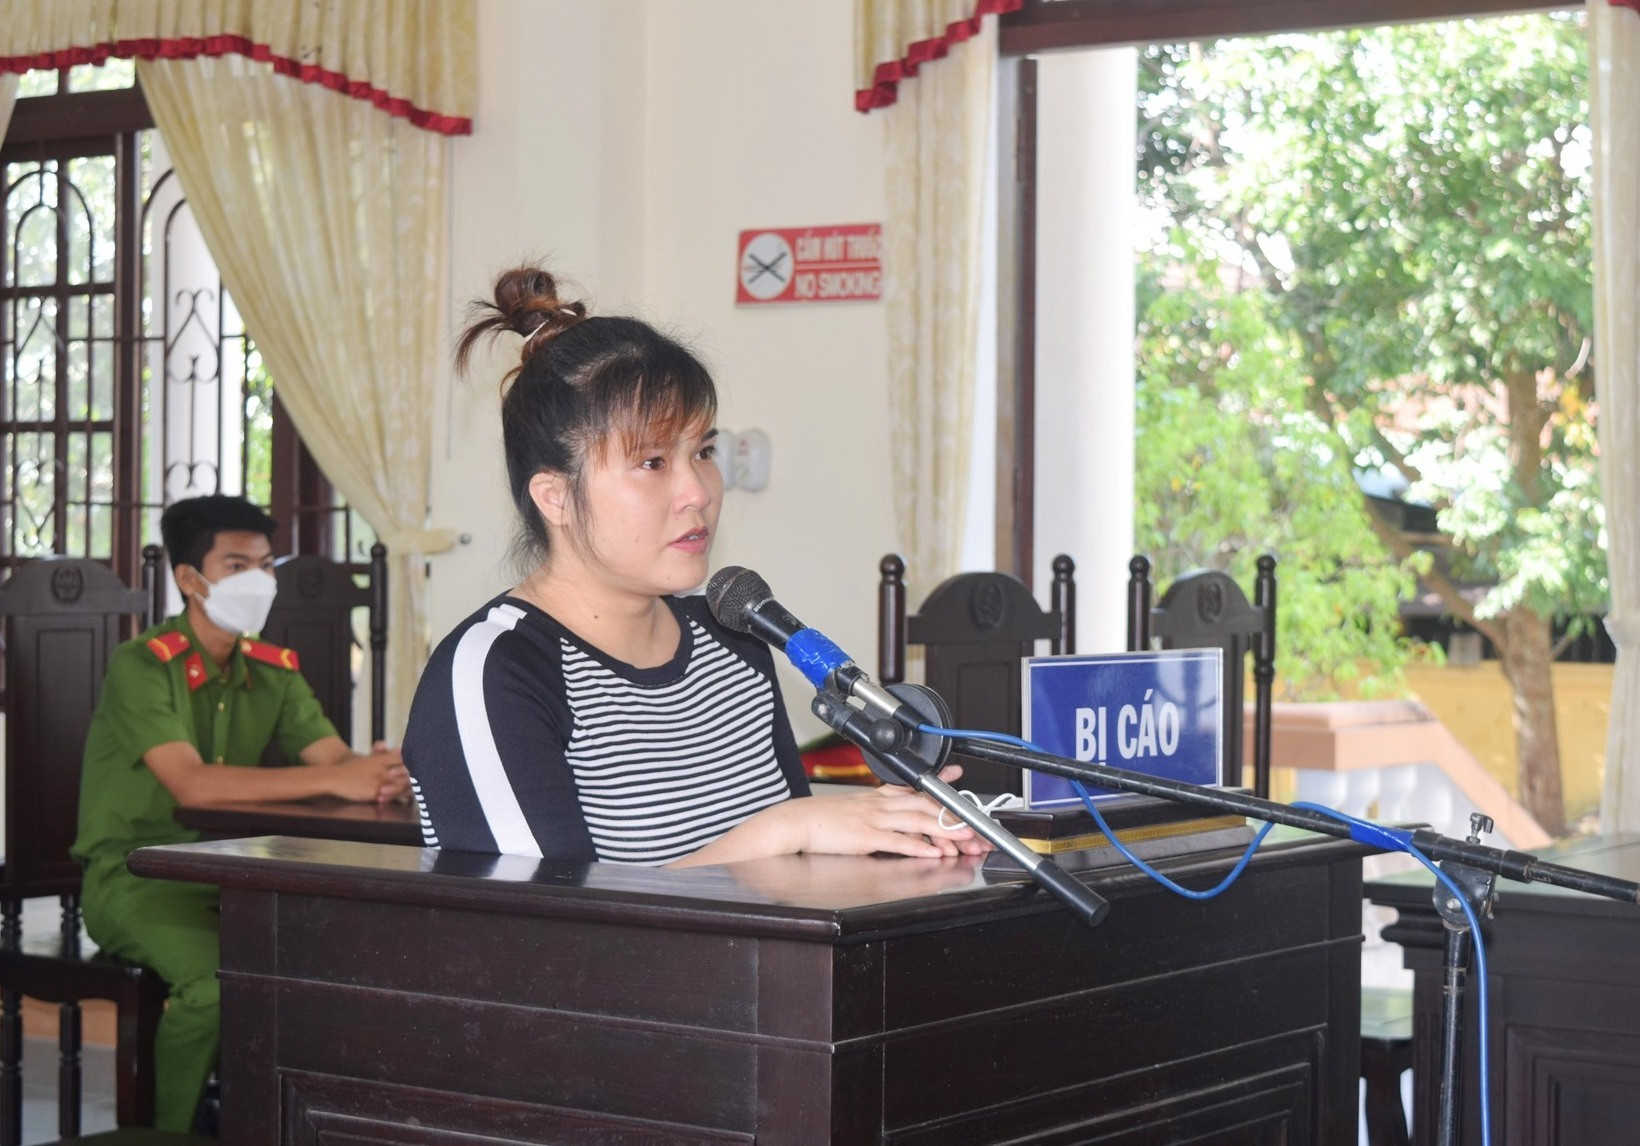 Bị cáo Nguyễn Thị Hải bị tuyên phạt 7 năm 6 tháng tù về tội mua bán trái phép chất ma túy